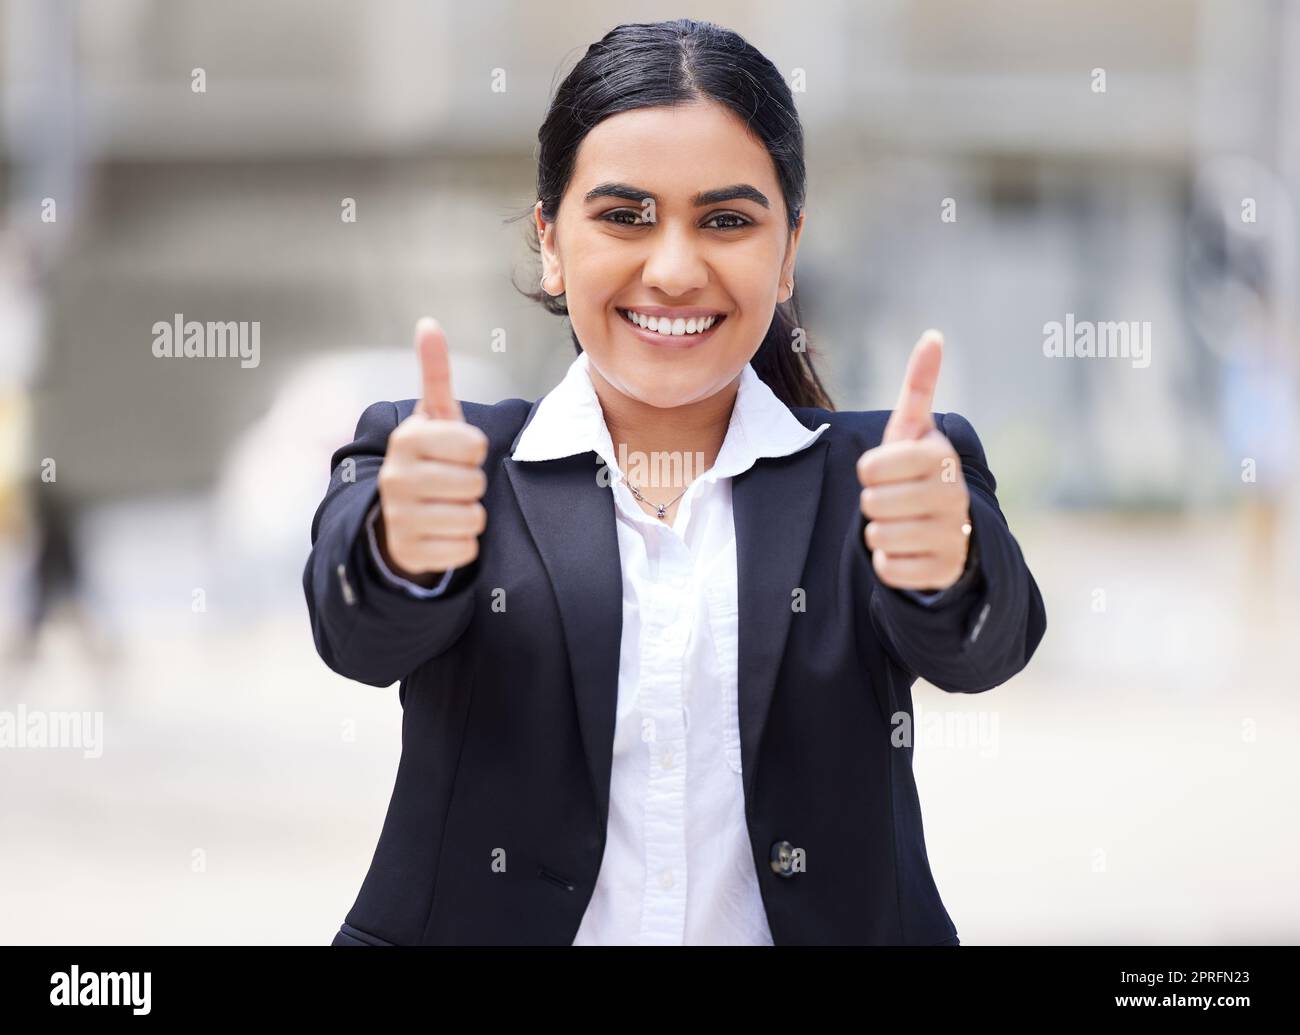 Daumen hoch Emoji für Motivation und Erfolg und danke für Ihre Unterstützung in der Stadt. Portrait einer glücklichen, lächelnden und aufgeregten Geschäftsfrau, Gewinnerin und Arbeiterin mit Ziel, ja stimmen und Vertrauen für gute Nachrichten Stockfoto